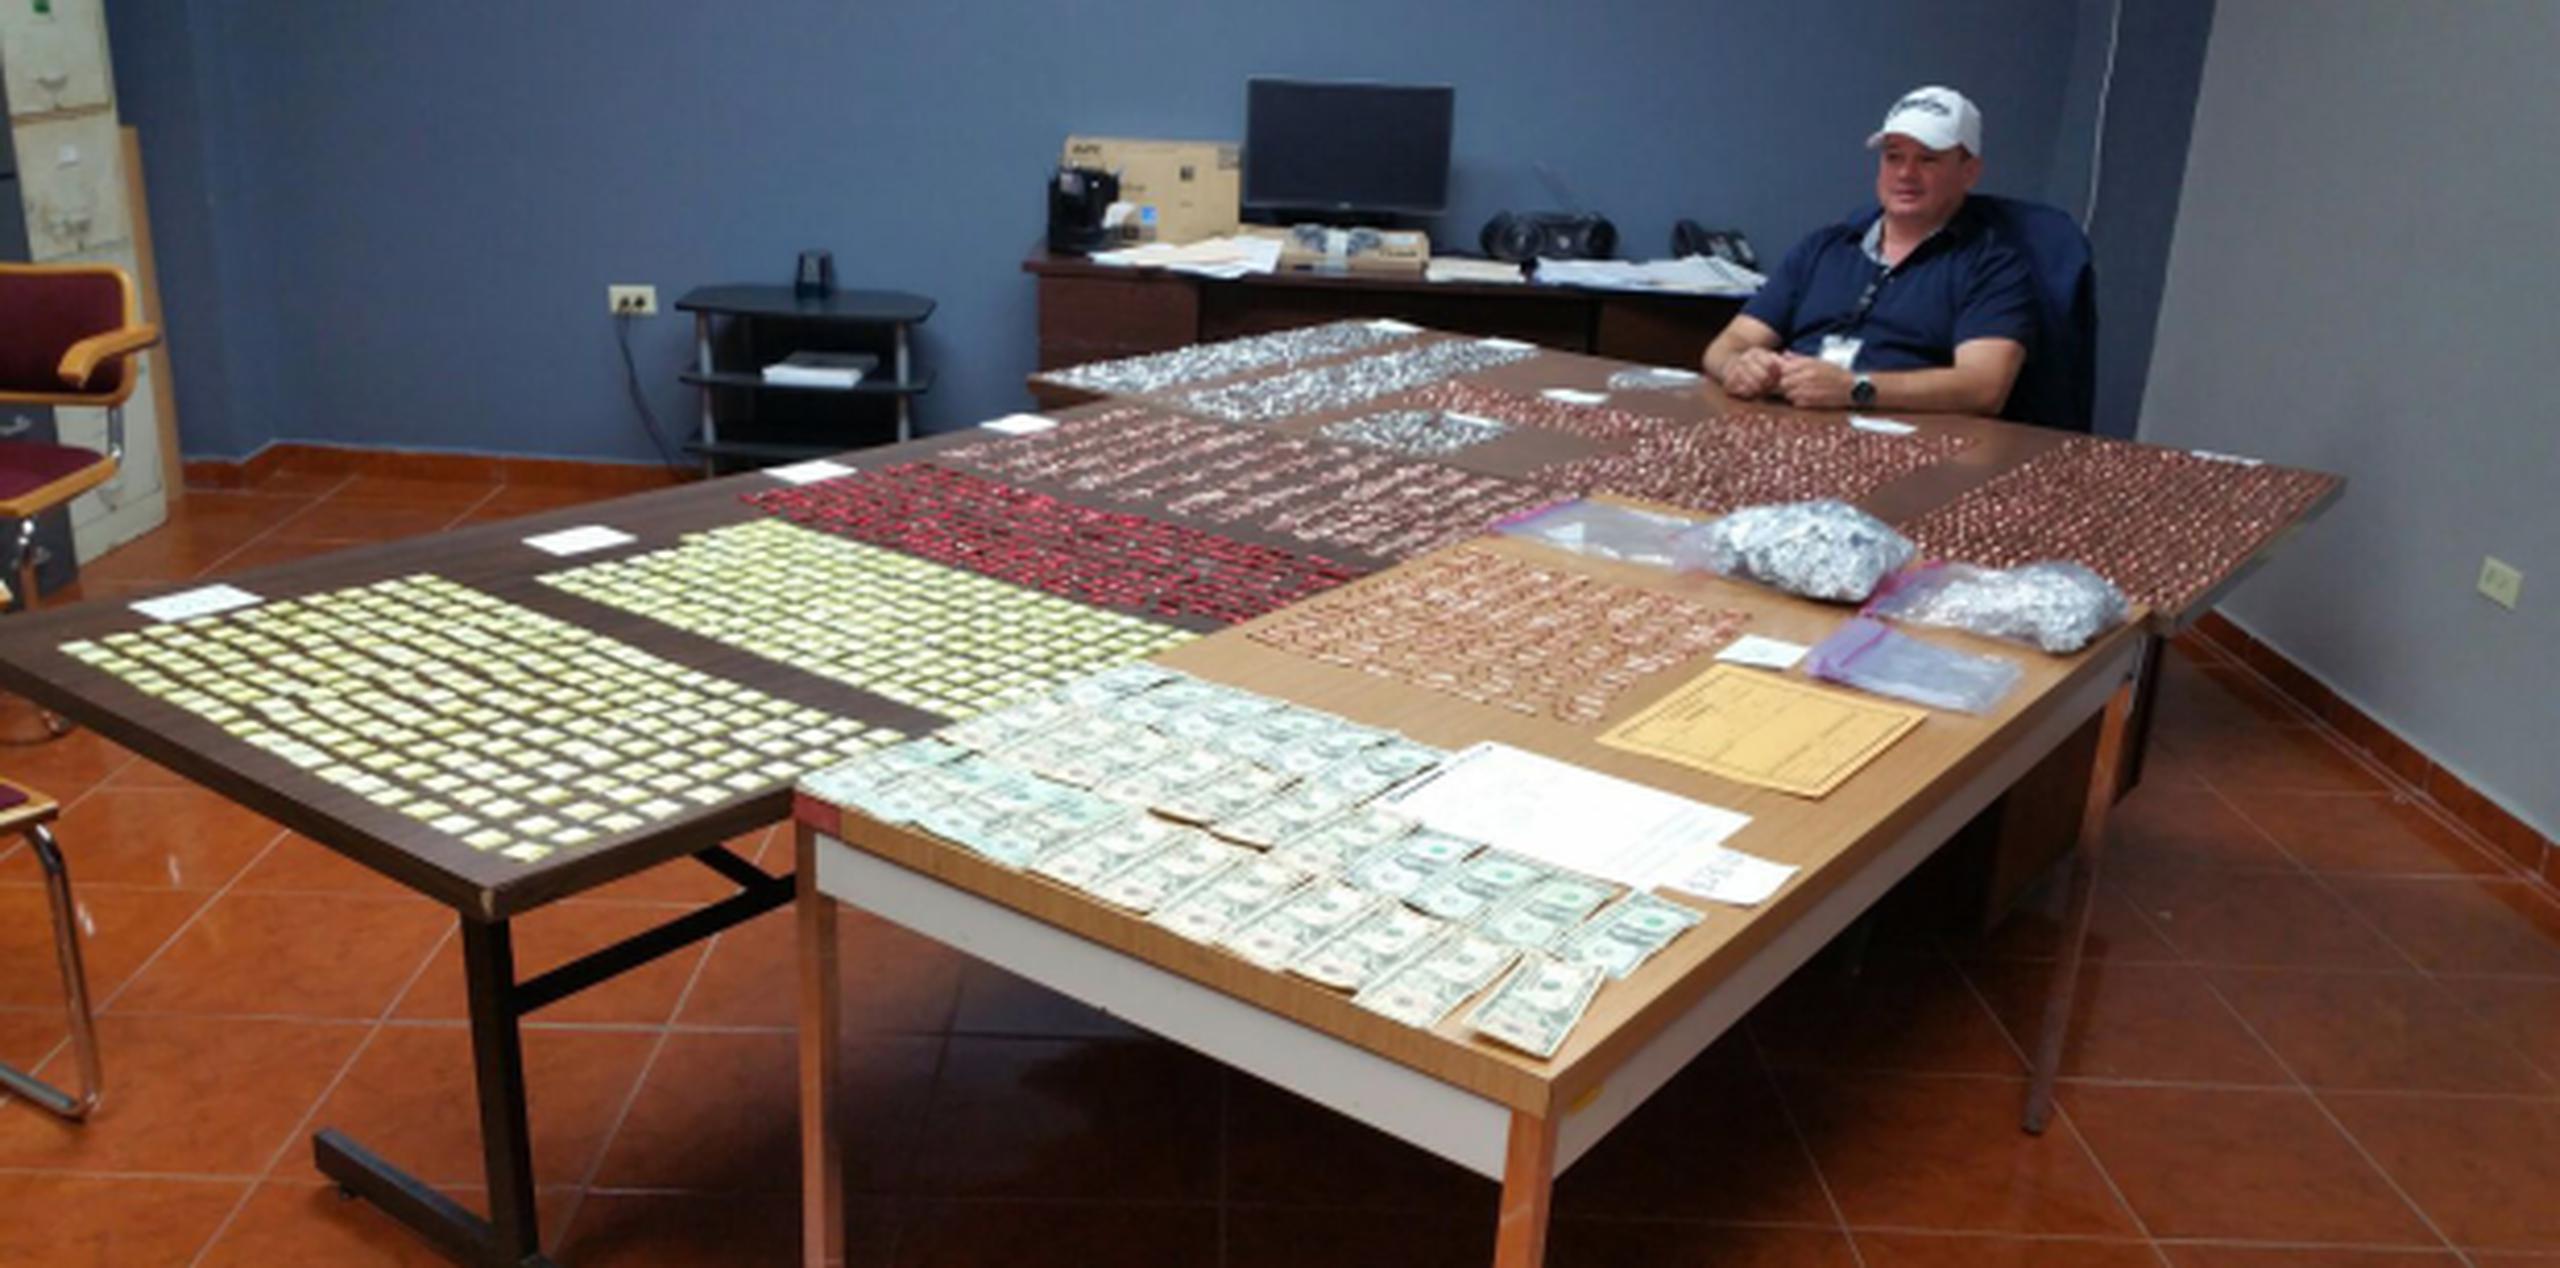 En el vehículo registrado los agentes incautaron unos 2,000 “decks” de heroína y 374 bolsitas con cocaína con un valor de $25,000 en el mercado ilegal. (Suministrada)